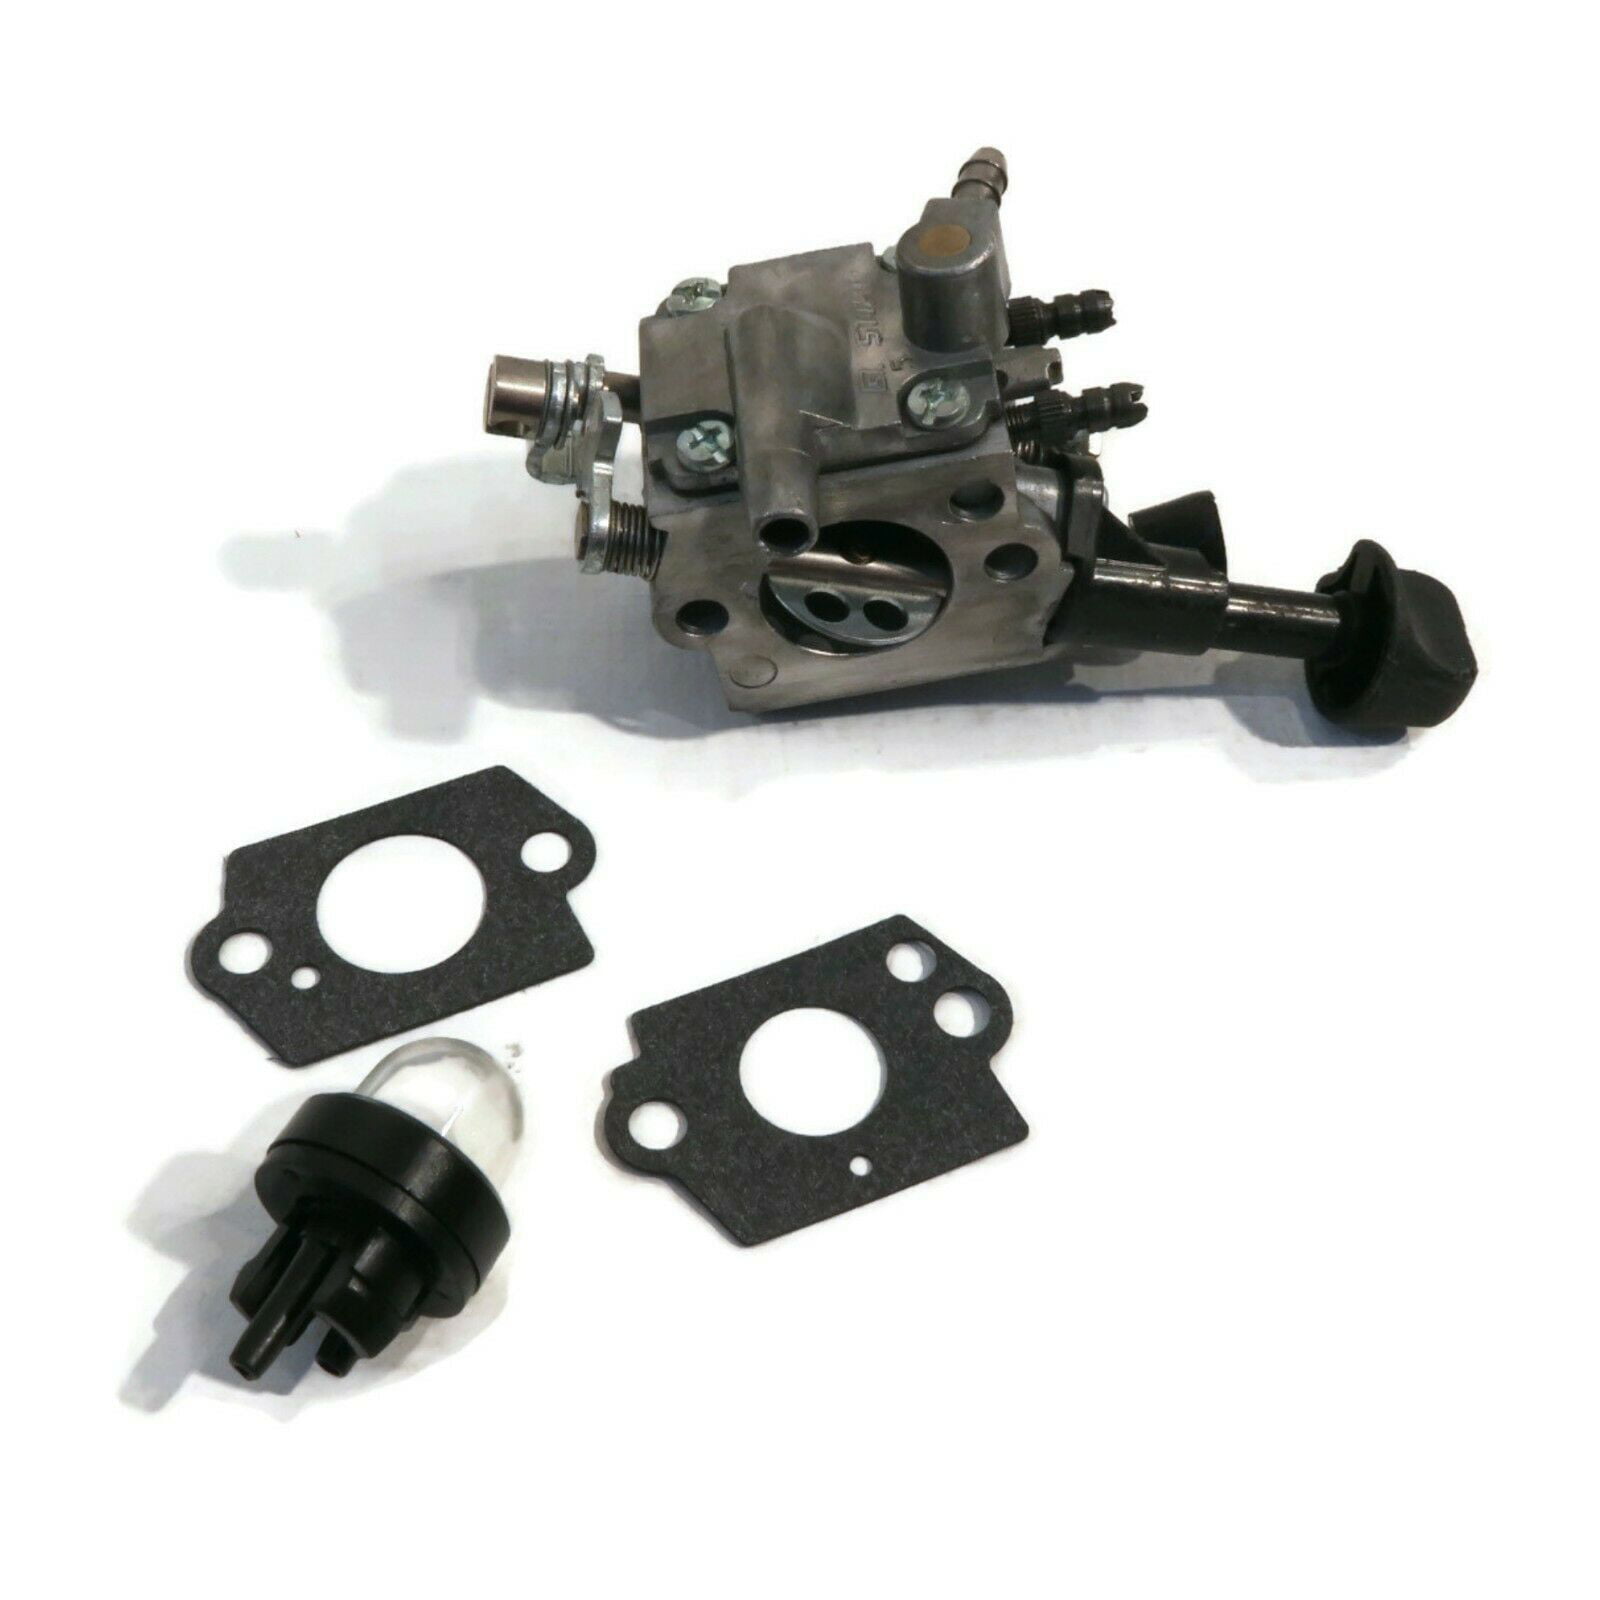 Carburetor Fuel Tune up kit for Stihl BR350 BR430 SR430 SR431 SR450 42291290901 